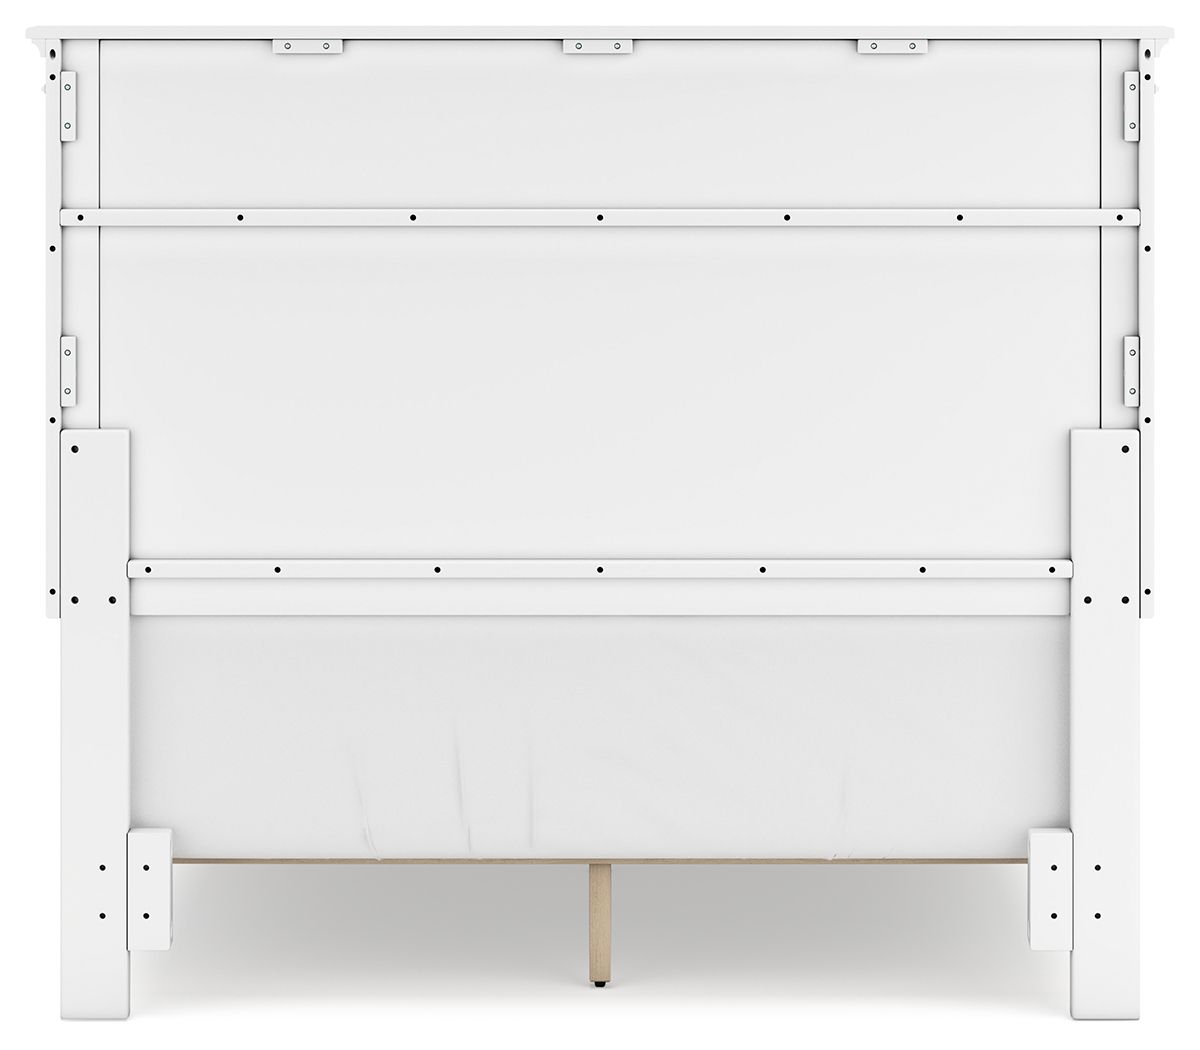 Fortman - White - Full Panel Bed